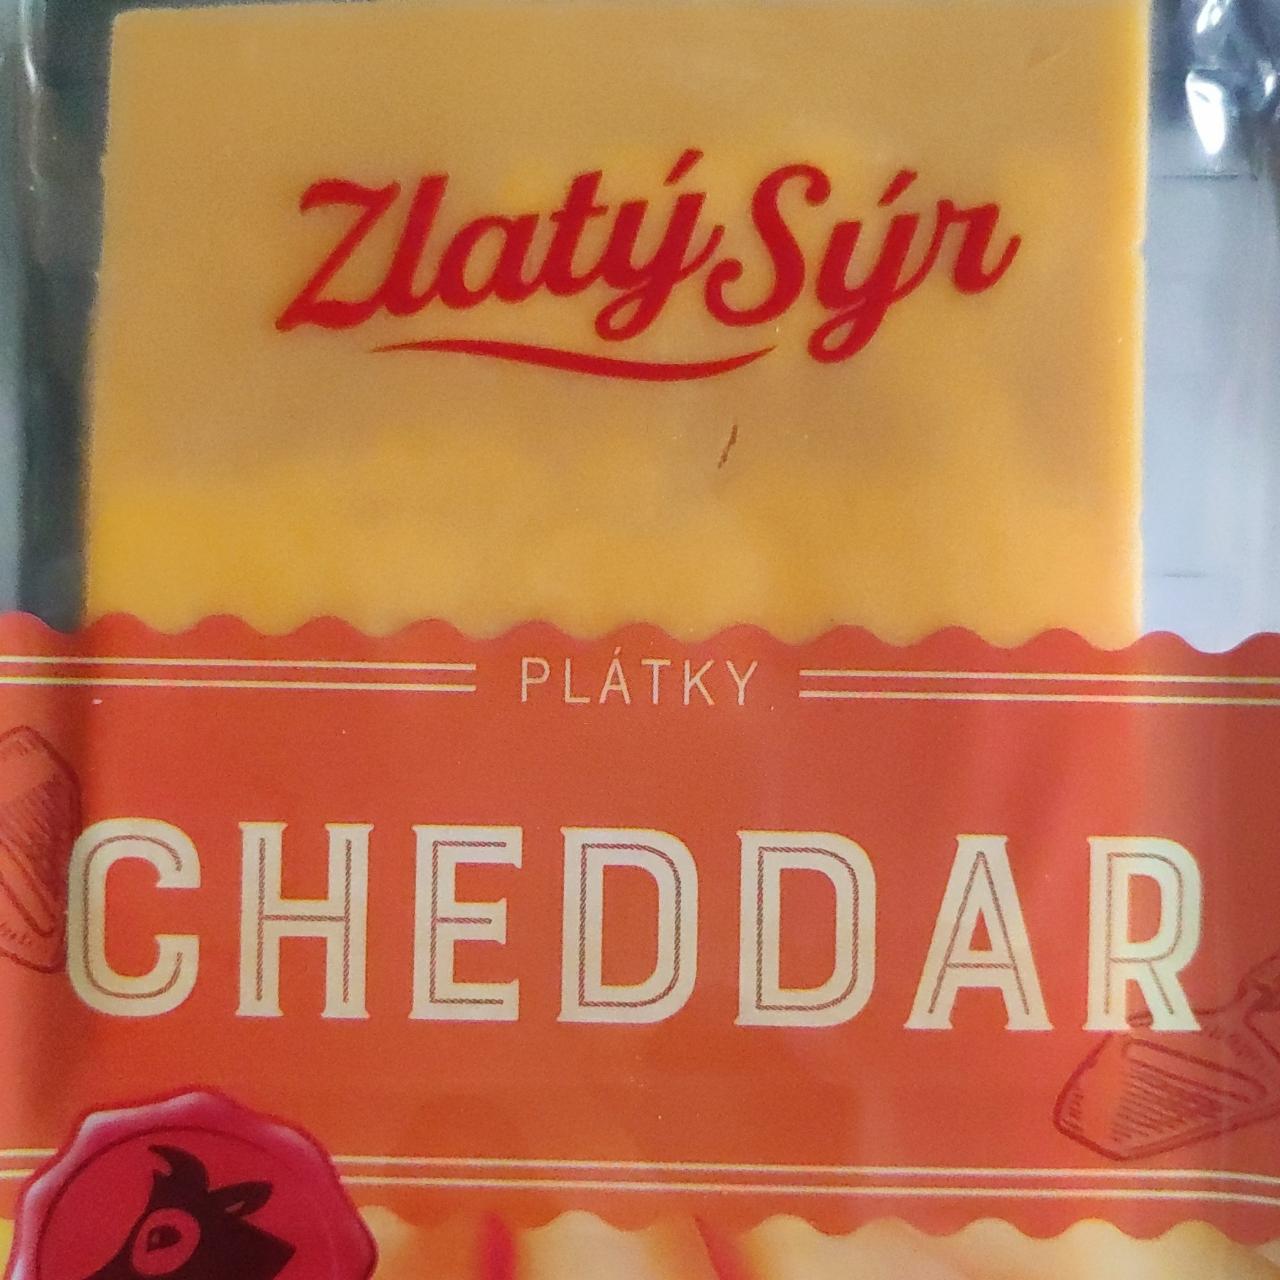 Fotografie - Chedar plátky Zlatý syr